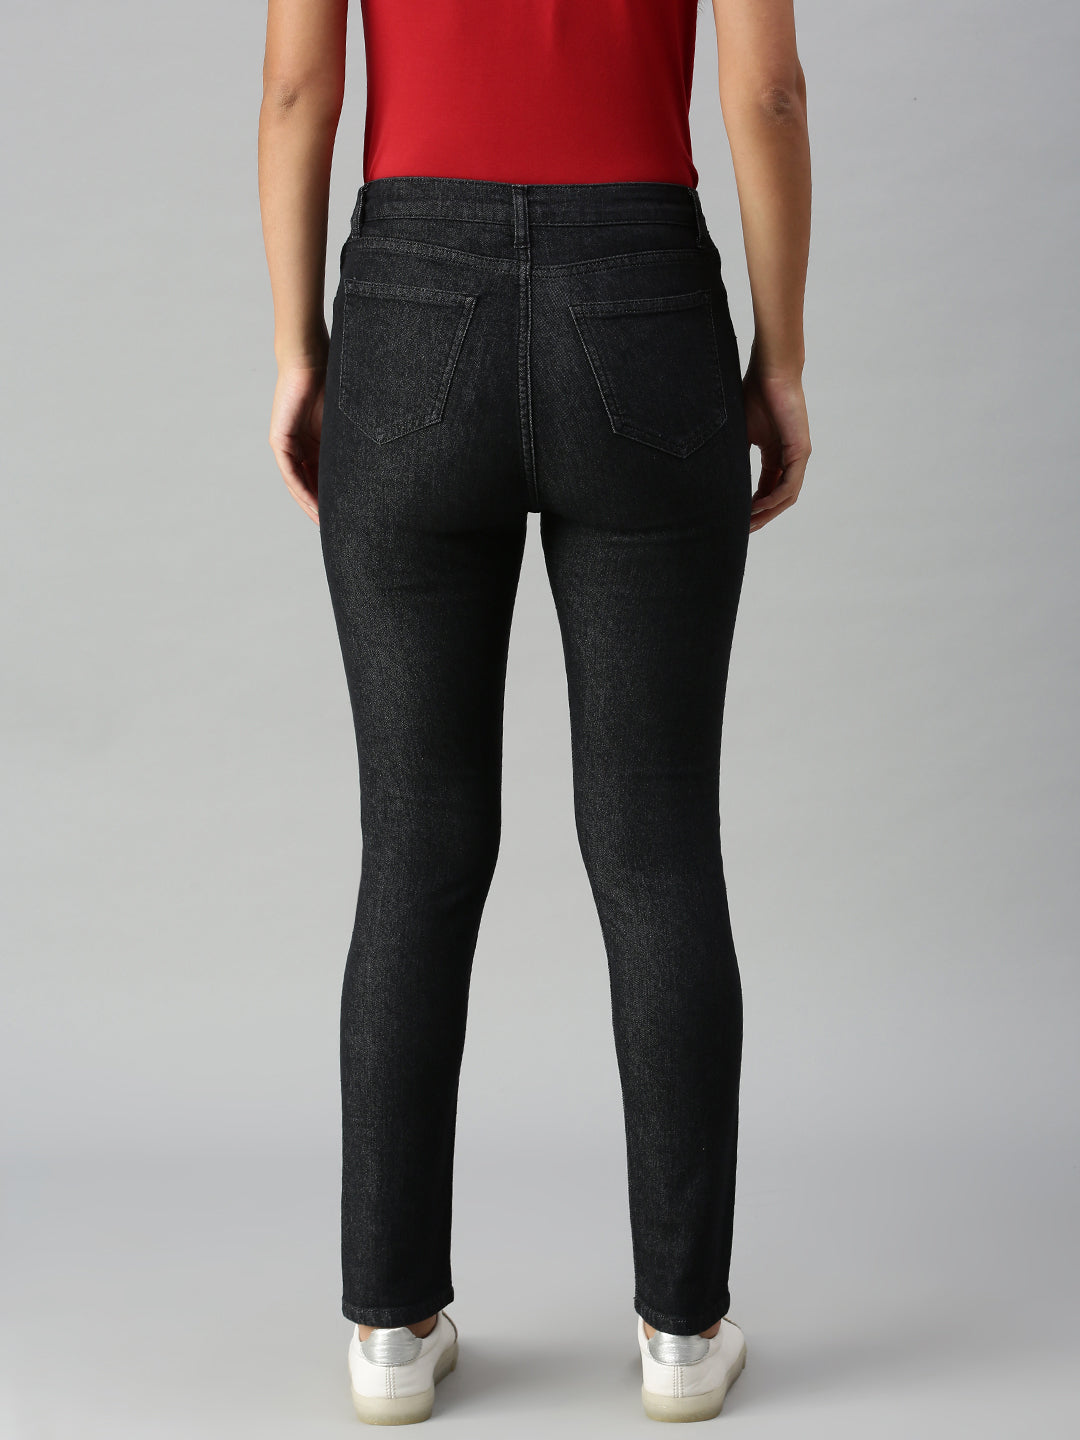 De Moza Women's Denim Jeans Pant Black